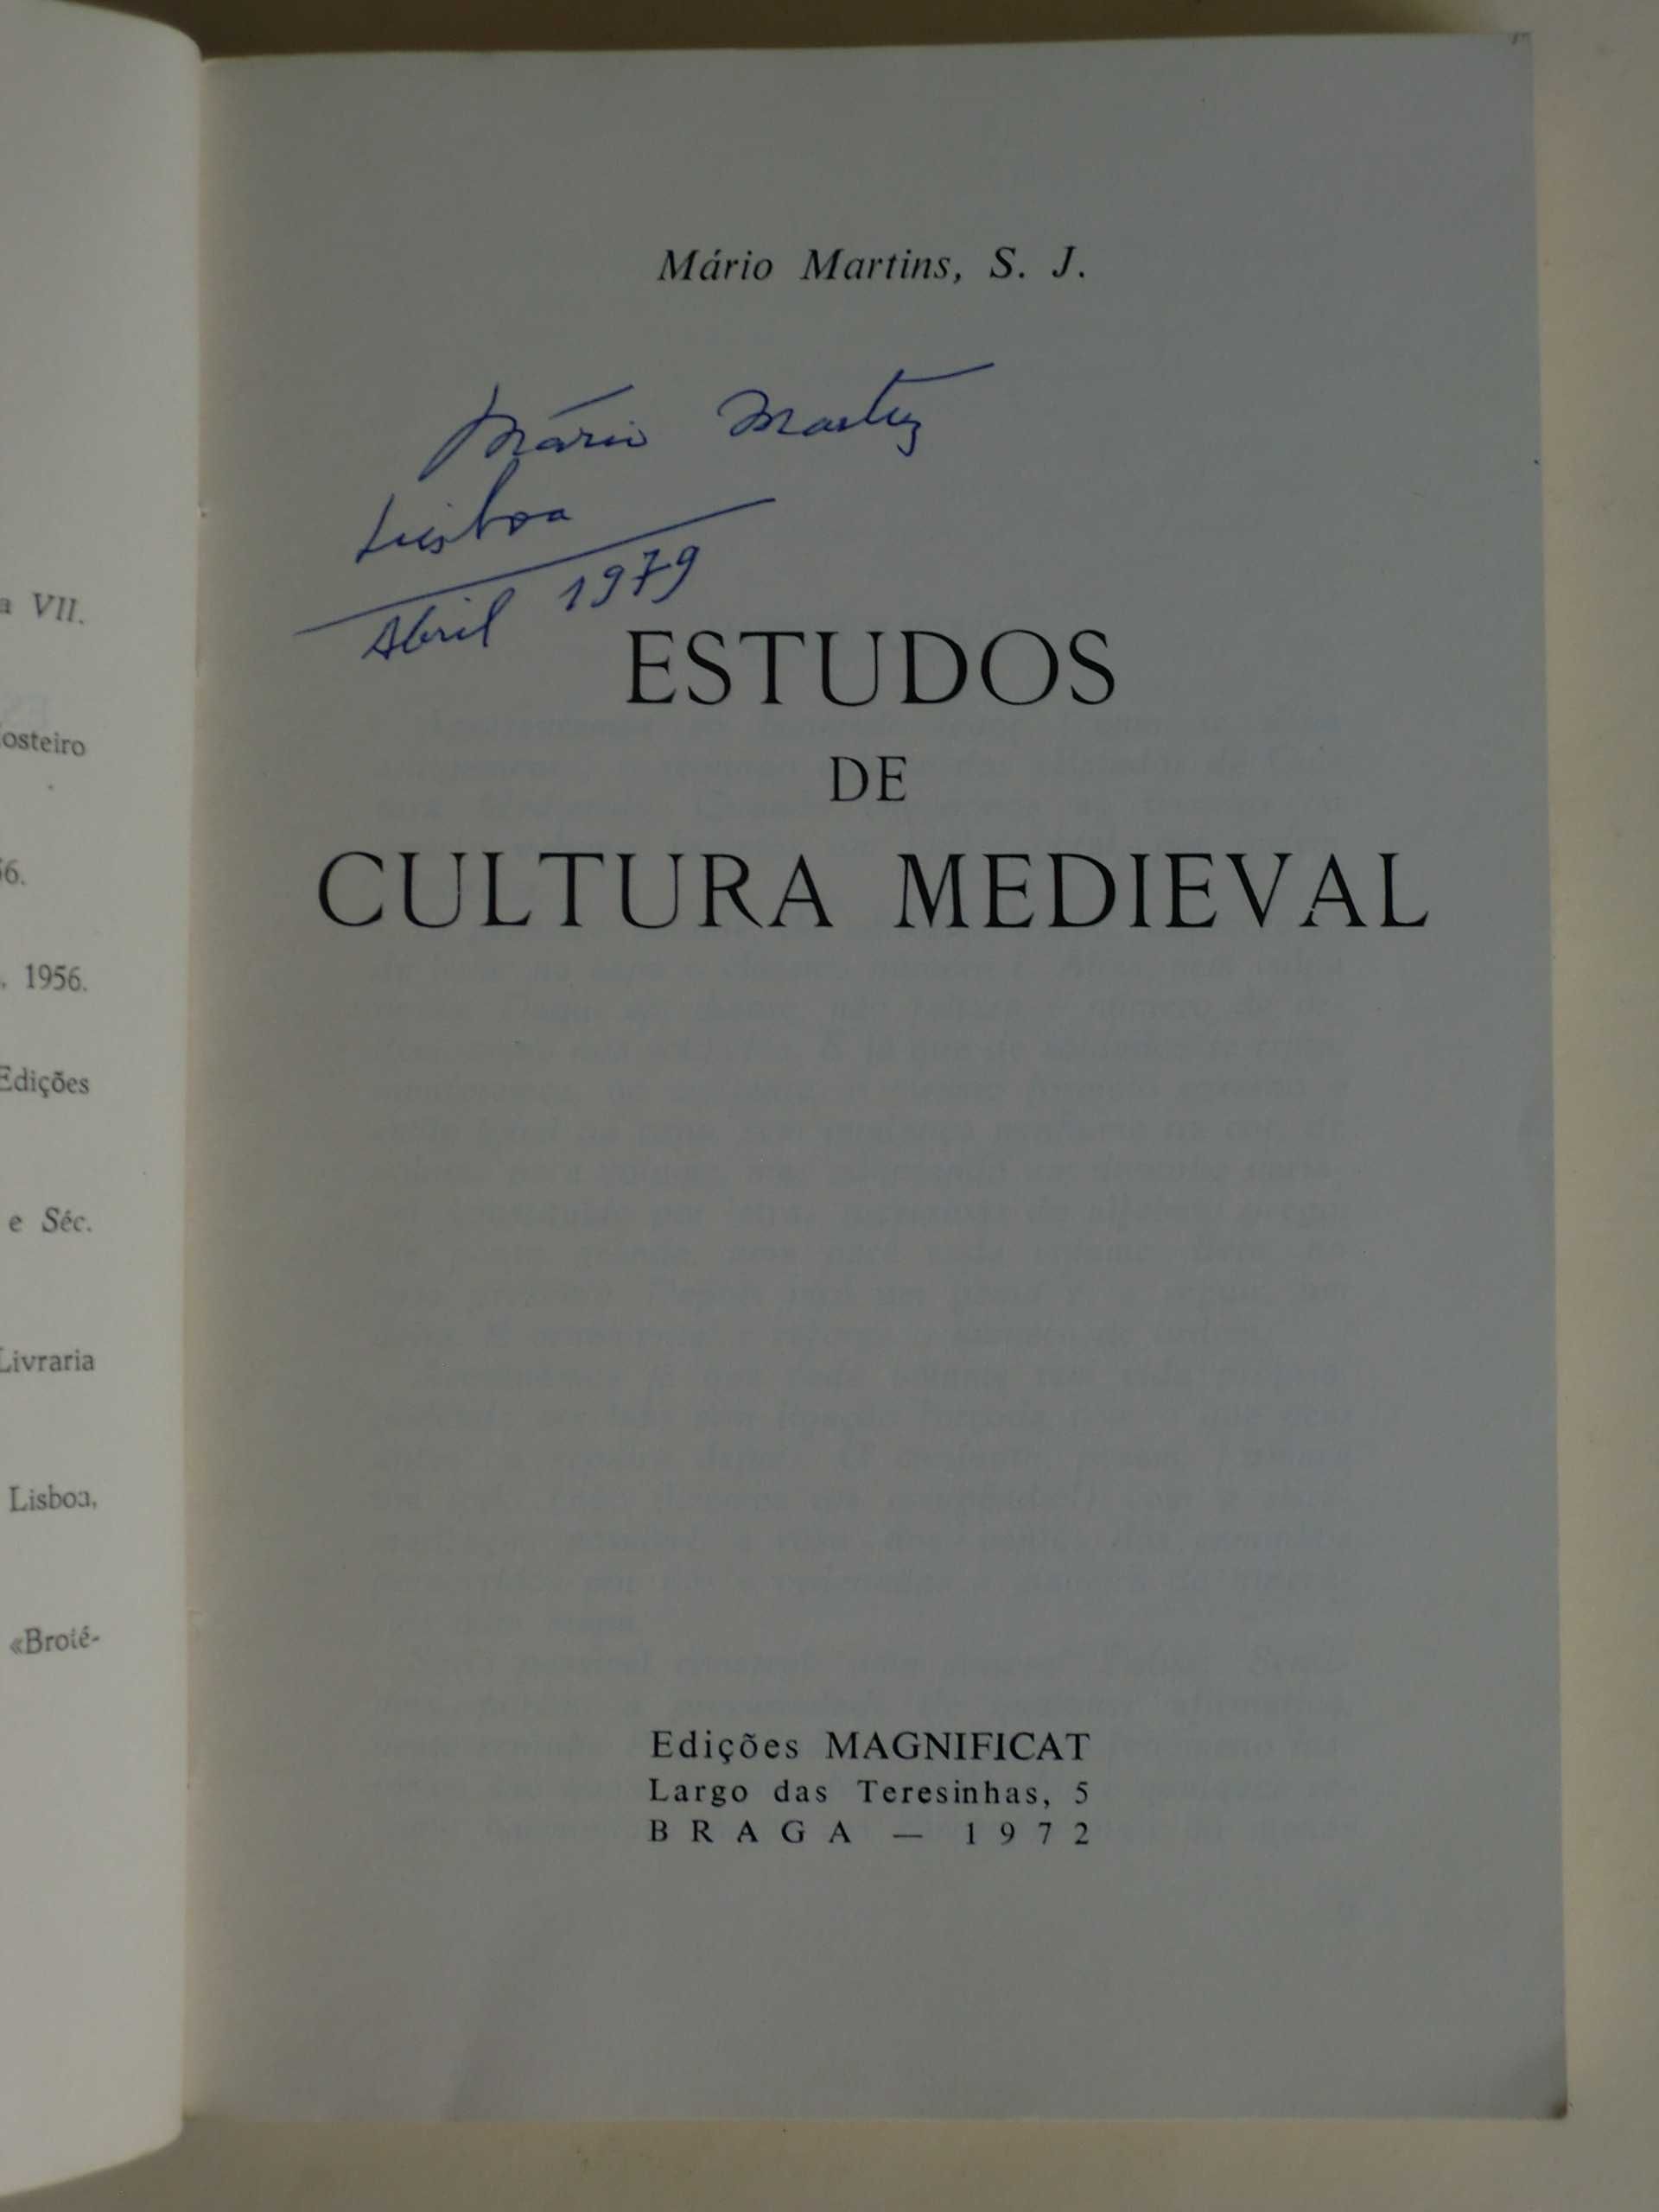 Estudos de Cultura Medieval
Volume II
de Mário Martins, S.J.